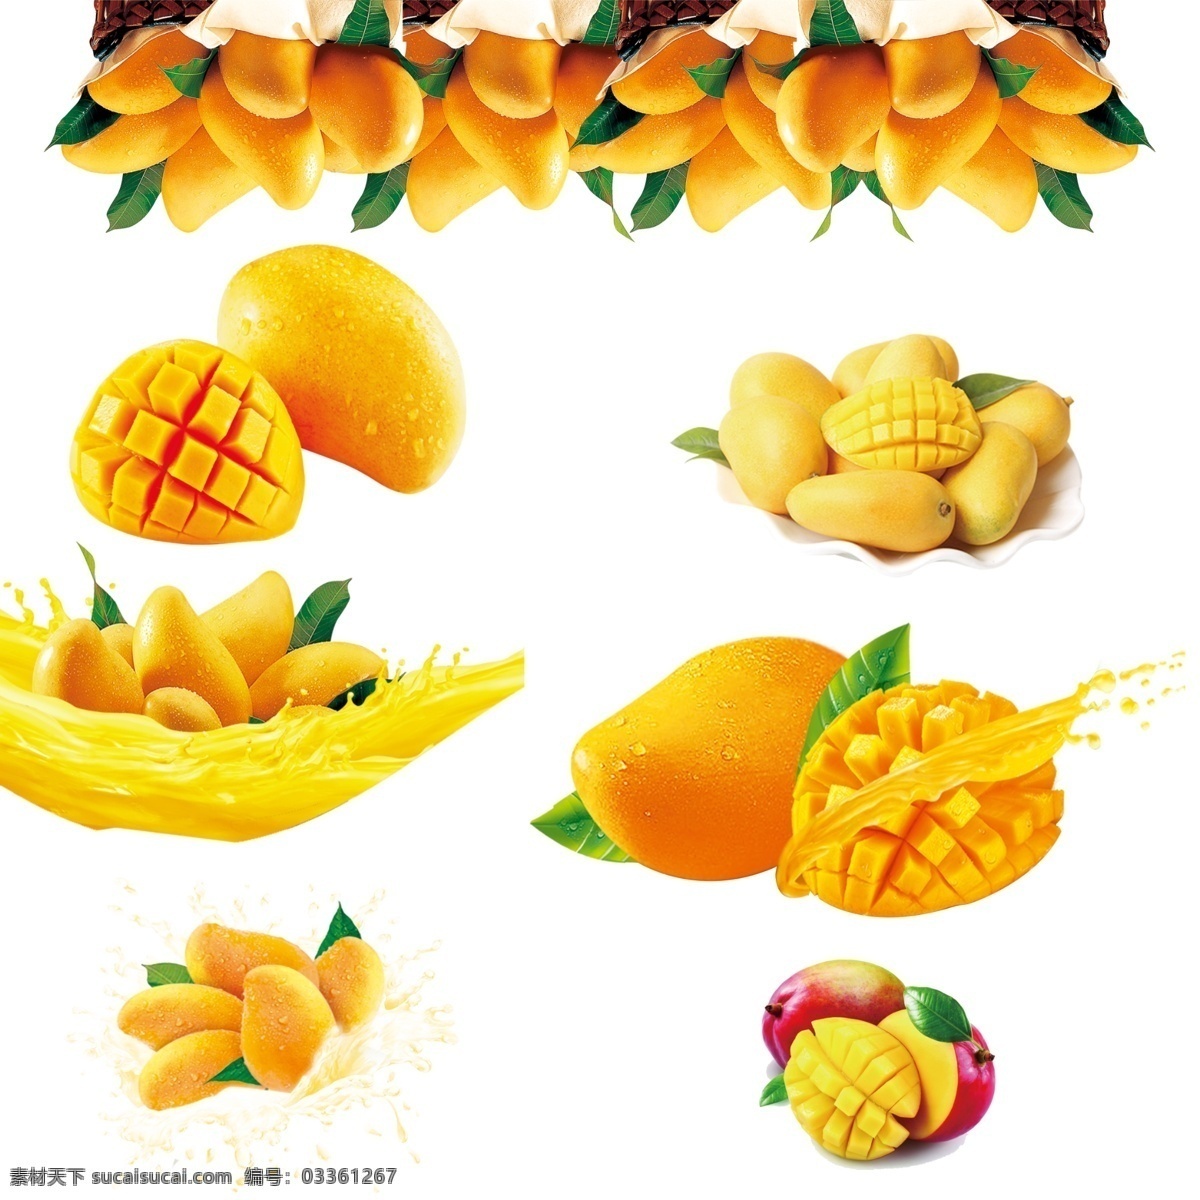 高清 芒果 分层 高清芒果 芒果分层 芒果叶 芒果汁 台湾芒果 新鲜芒果 热带水果